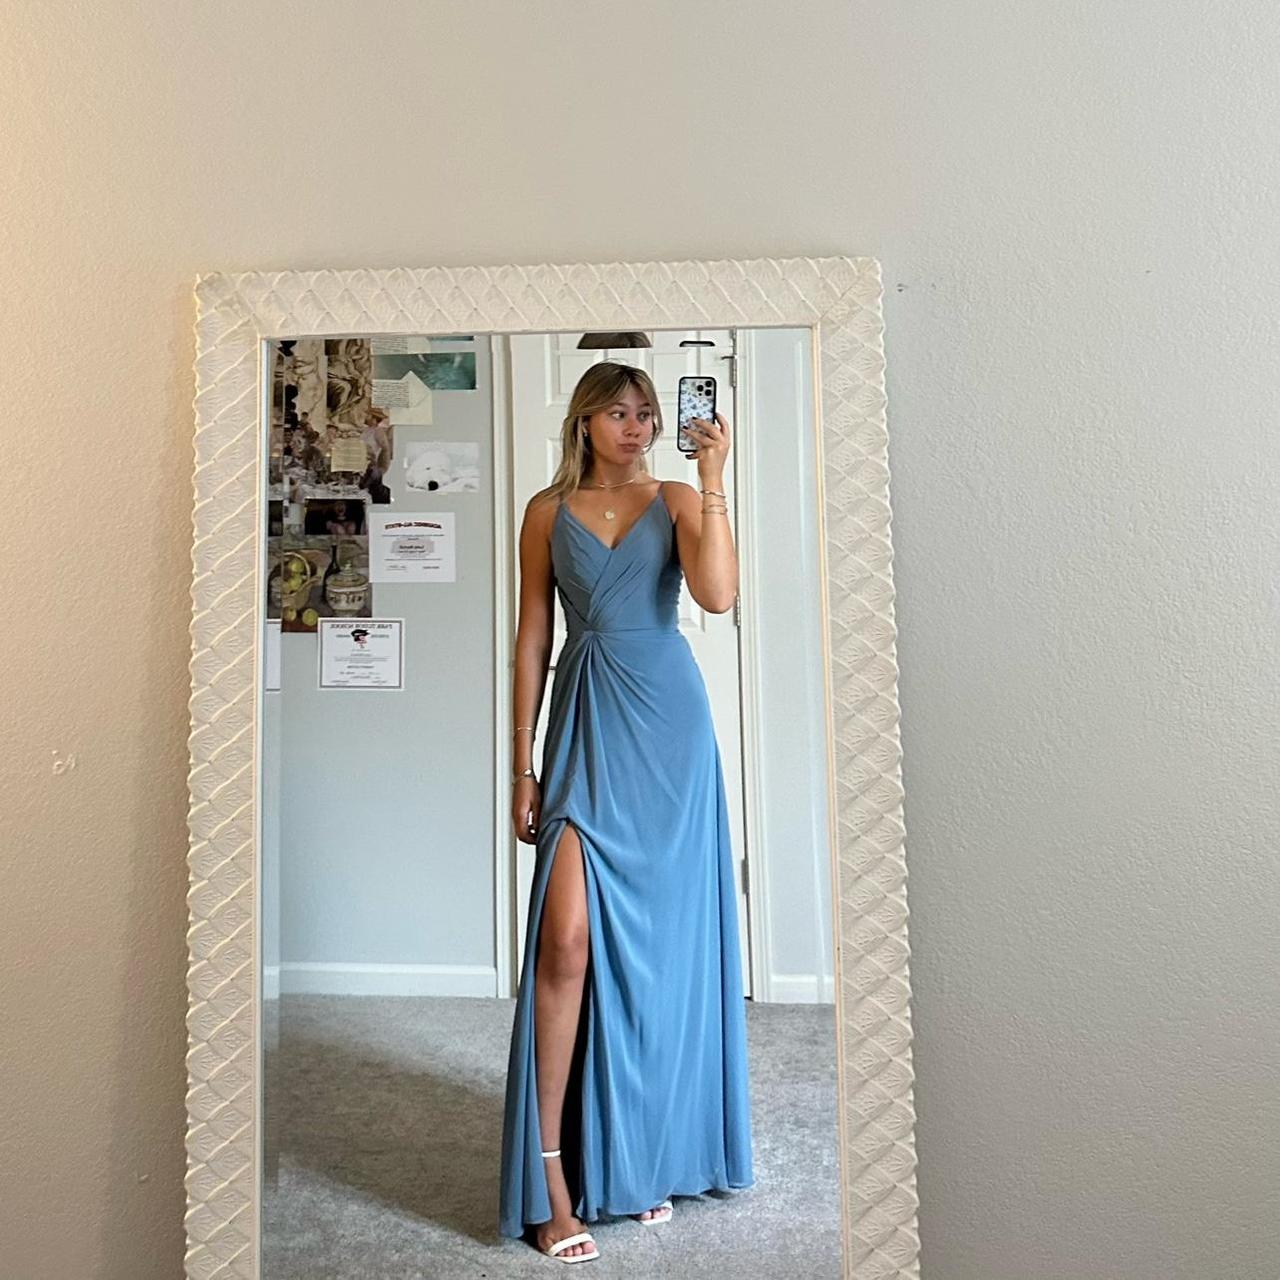 MORILEE slate blue chiffon formal dress with side... - Depop